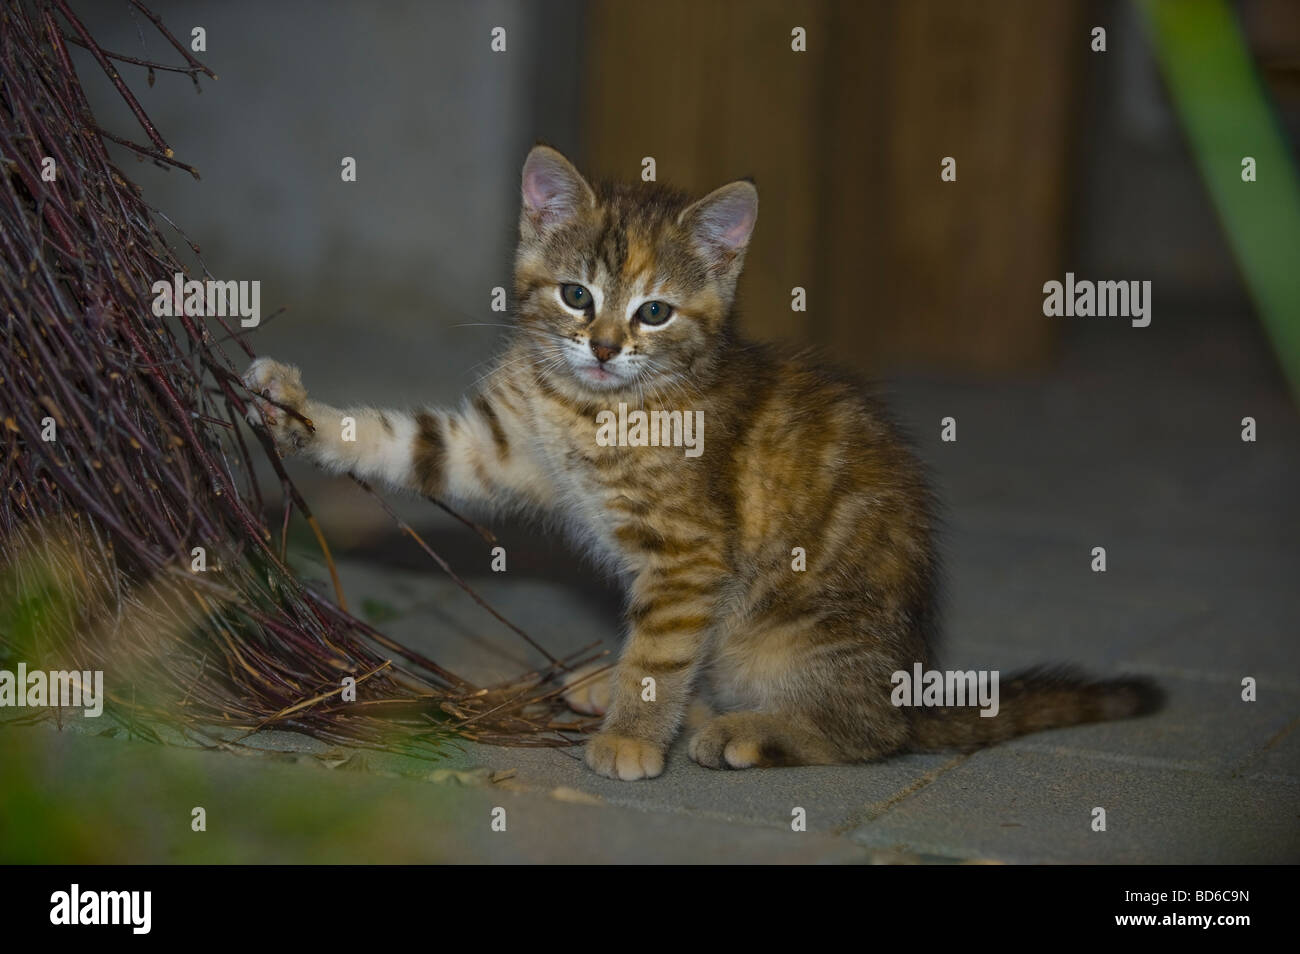 Los jóvenes marrón gato pelado jugar con ojos besom gatito laicos interiores sentar mirar en busca de animales gatito gato cateye vista magic bea Foto de stock